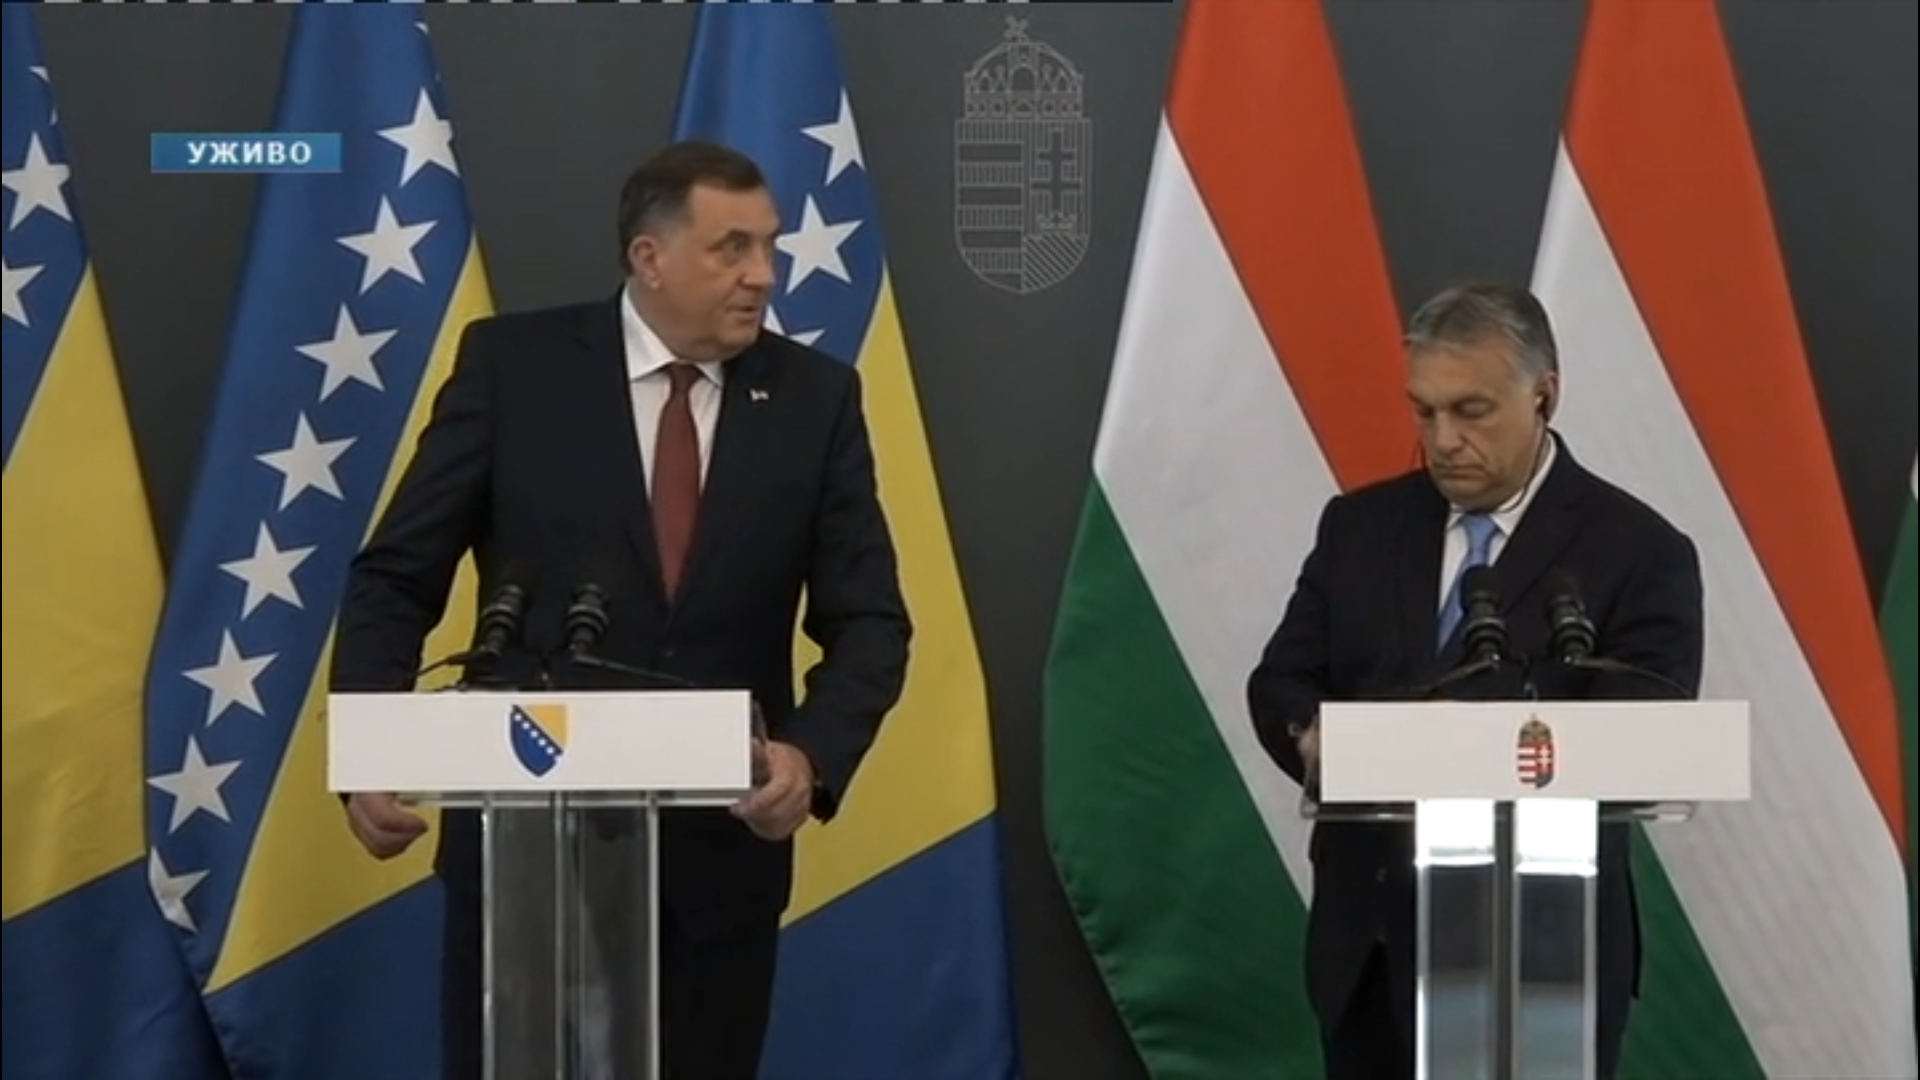 Dodik és Orbán tart közös sajtótájékoztatót még 2019-ben.